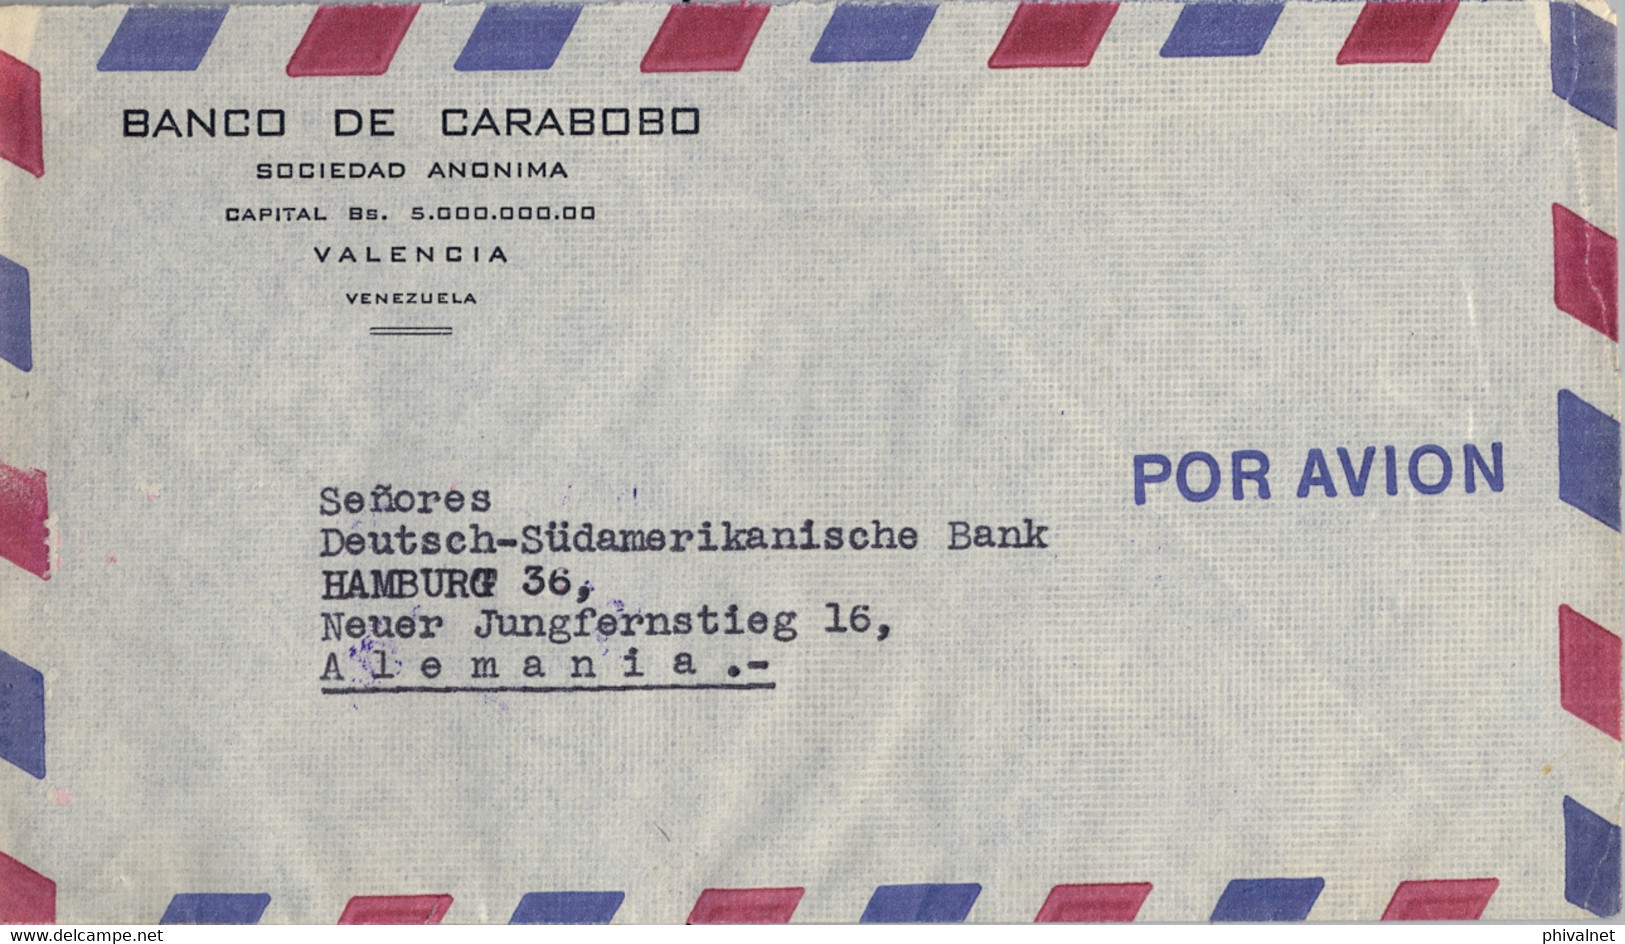 1953 , VENEZUELA , SOBRE CIRCULADO ENTRE VALENCIA Y HAMBURGO , BANCO DE CARABOBO , FR. ESCUDOS - Venezuela